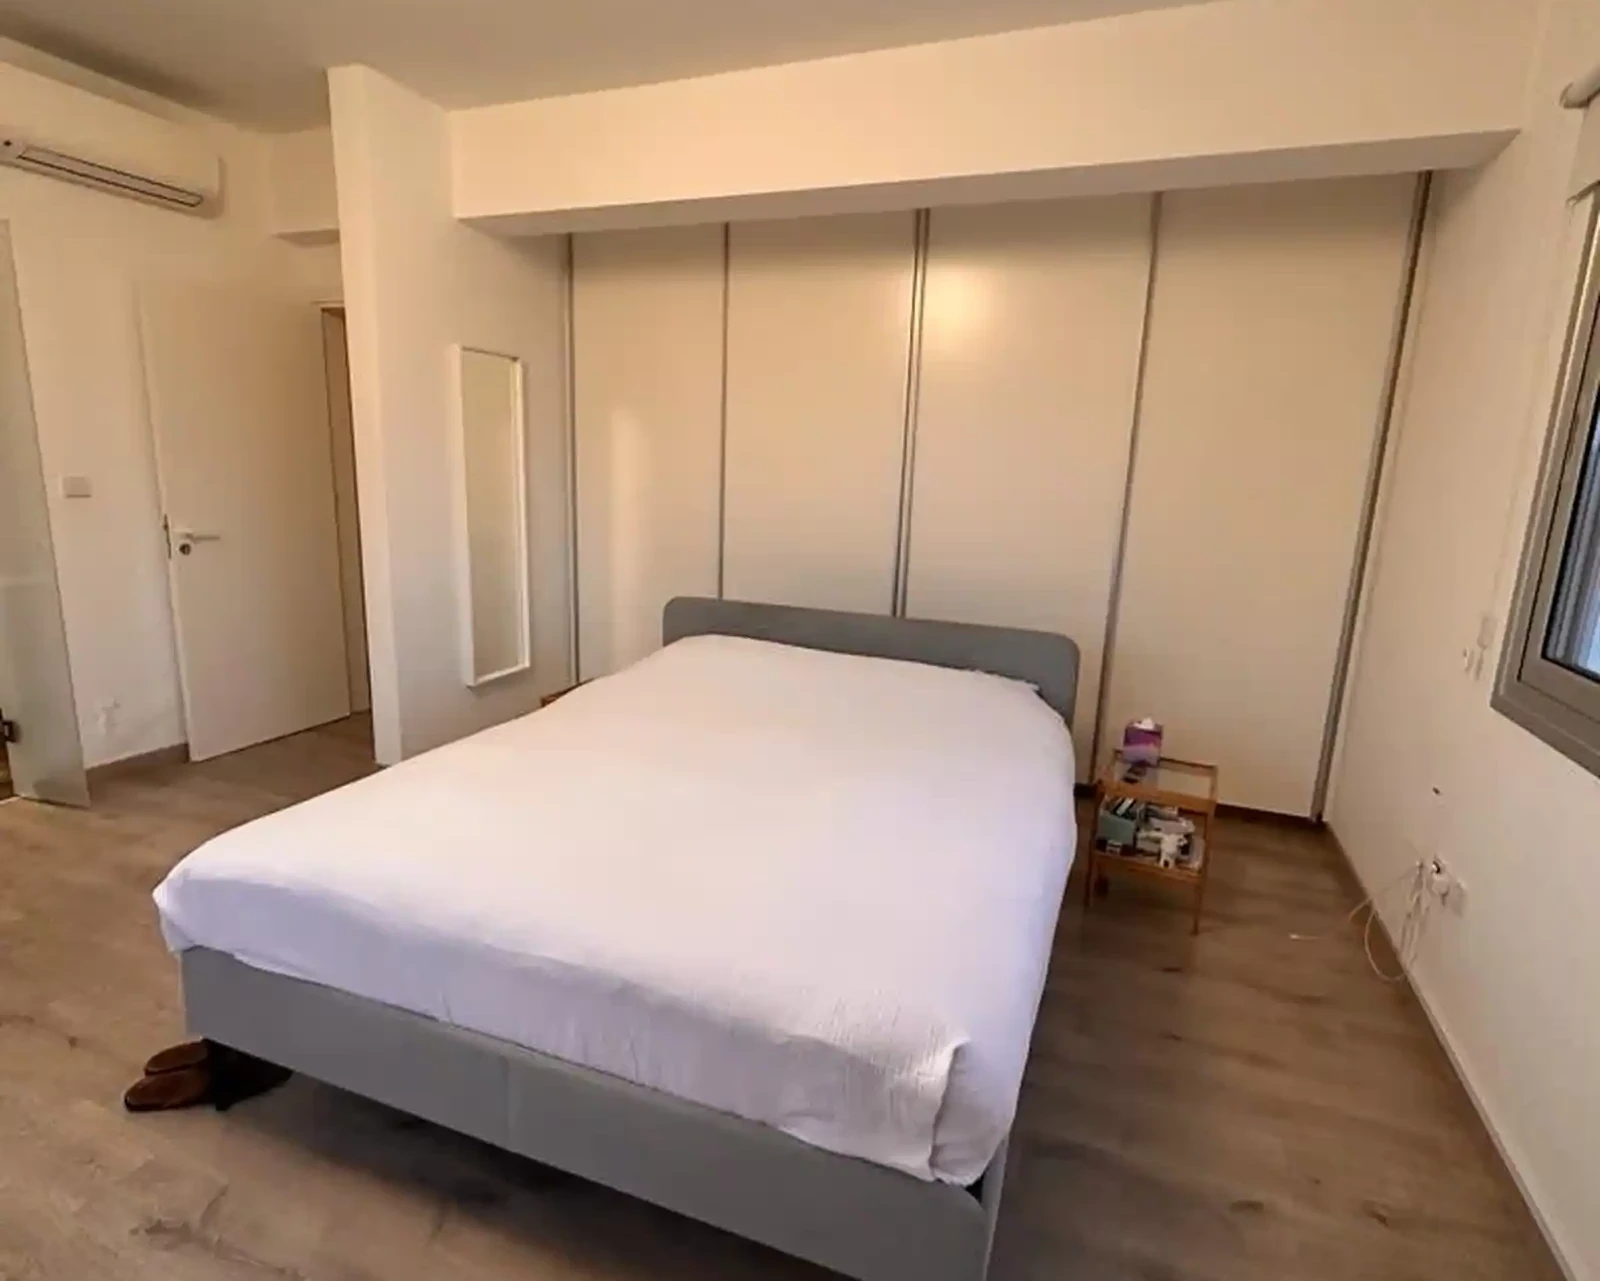 4-bedroom semi-detached to rent €2.700, image 1